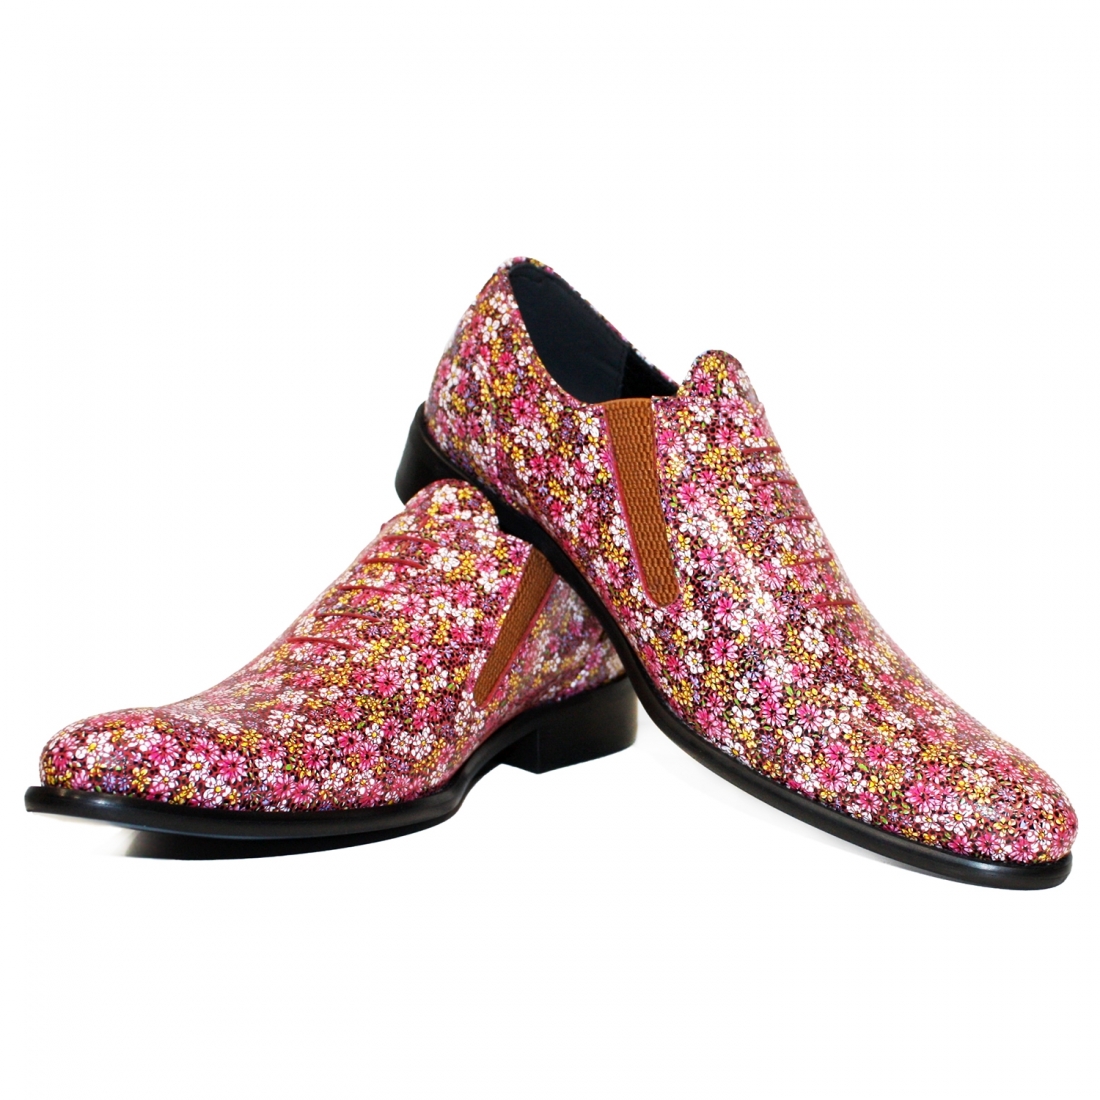 Modello Florealle - Buty Wsuwane - Handmade Colorful Italian Leather Shoes